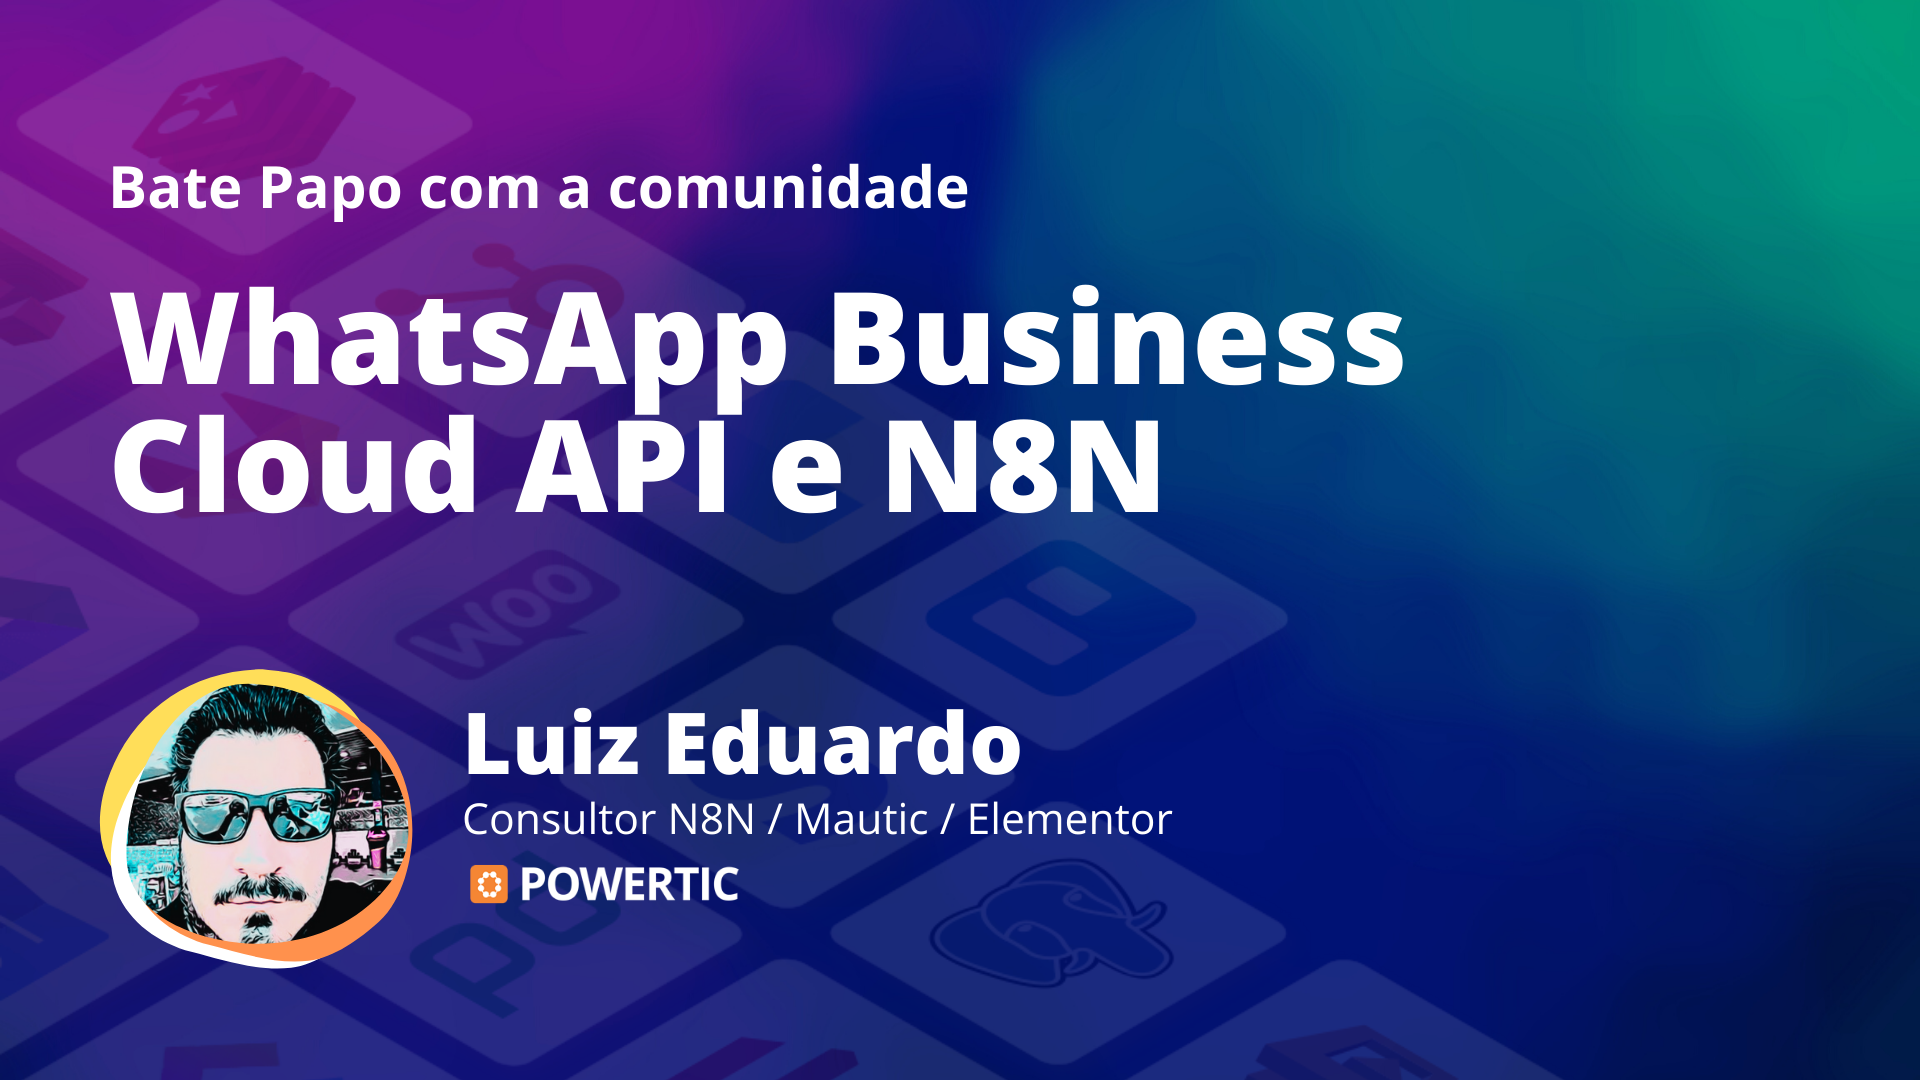 Bate Papo sobre WhatsApp Business Cloud API e N8N